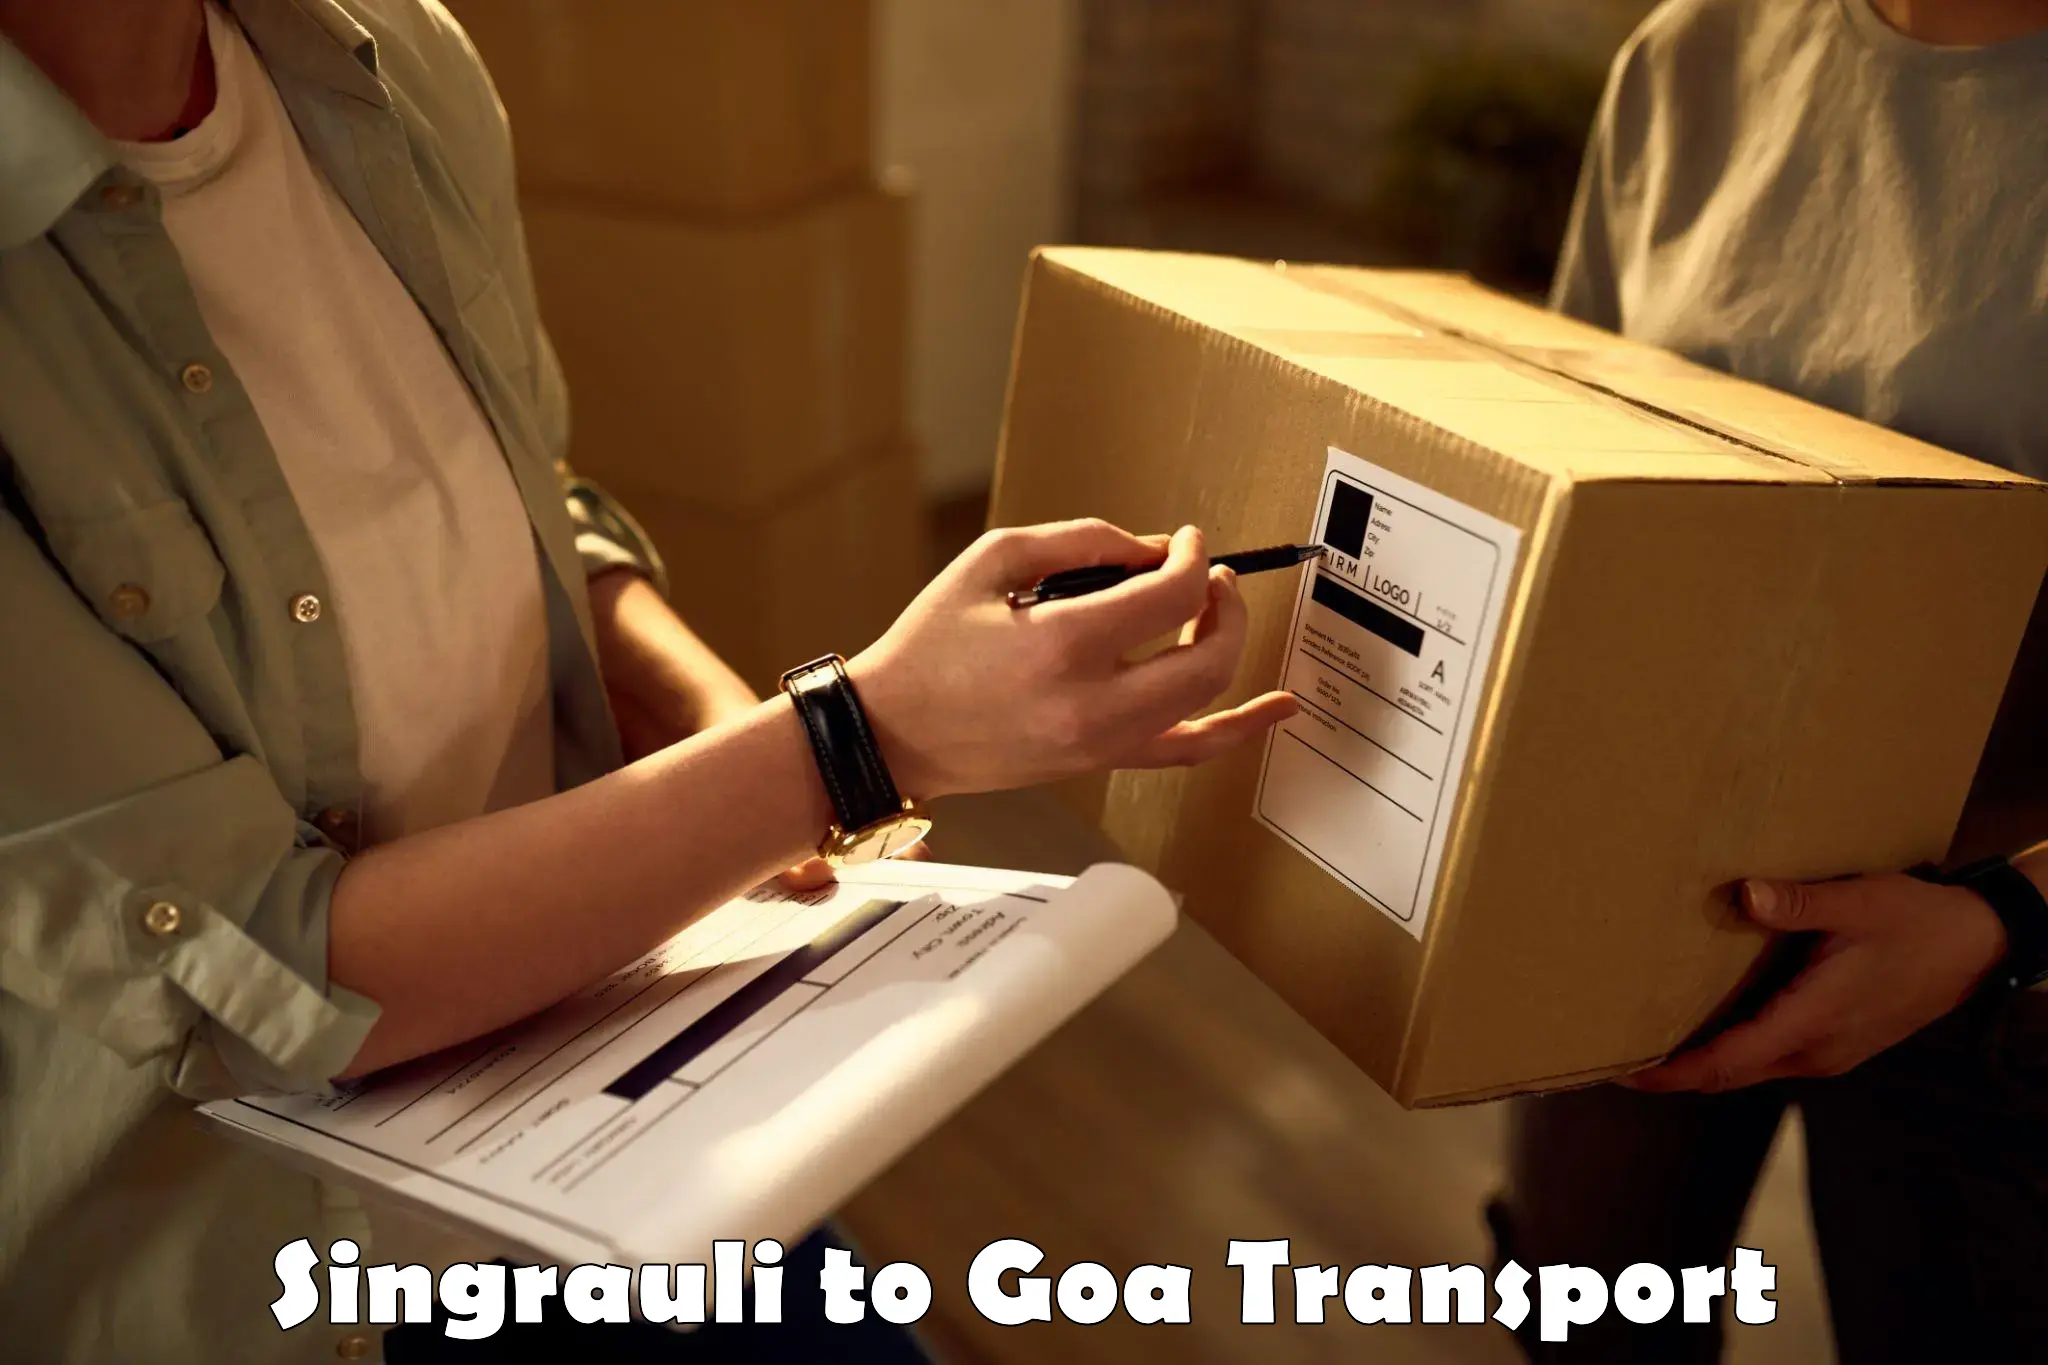 Daily parcel service transport Singrauli to Mormugao Port